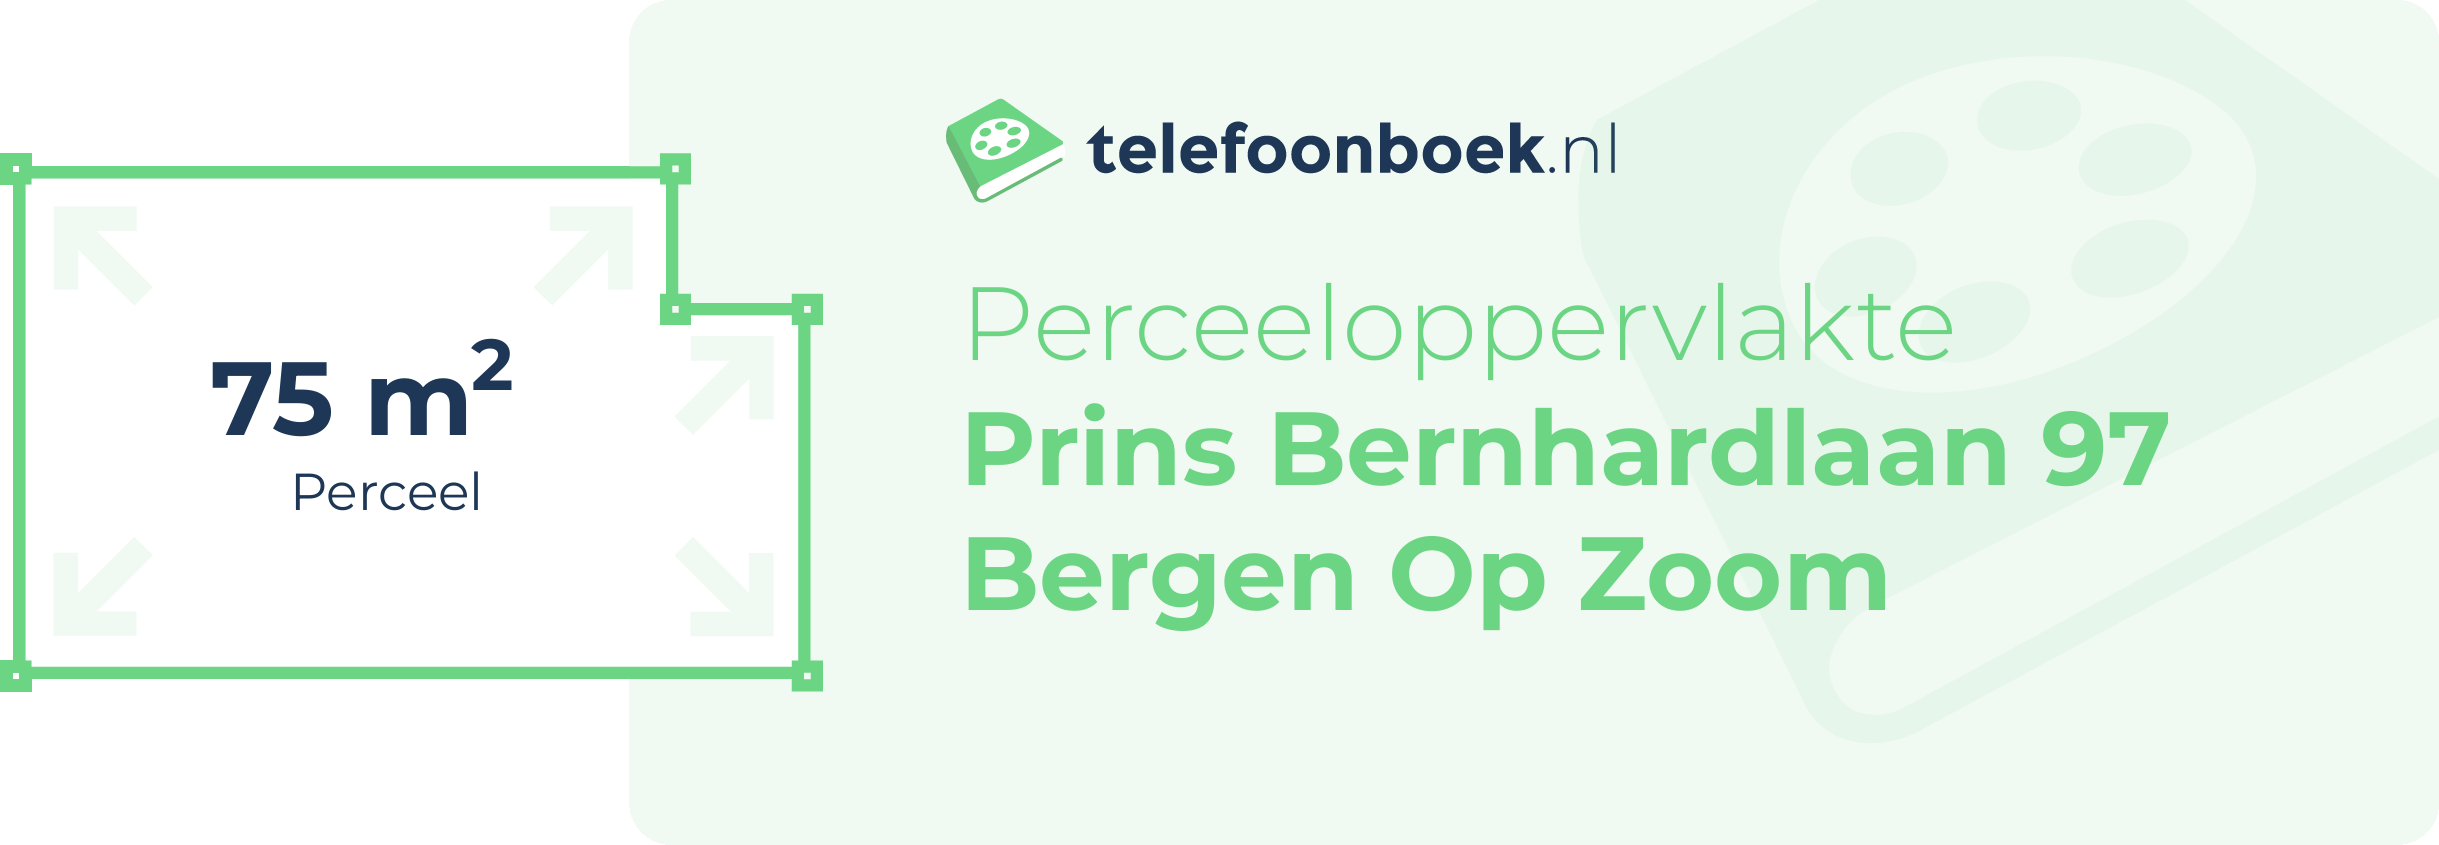 Perceeloppervlakte Prins Bernhardlaan 97 Bergen Op Zoom